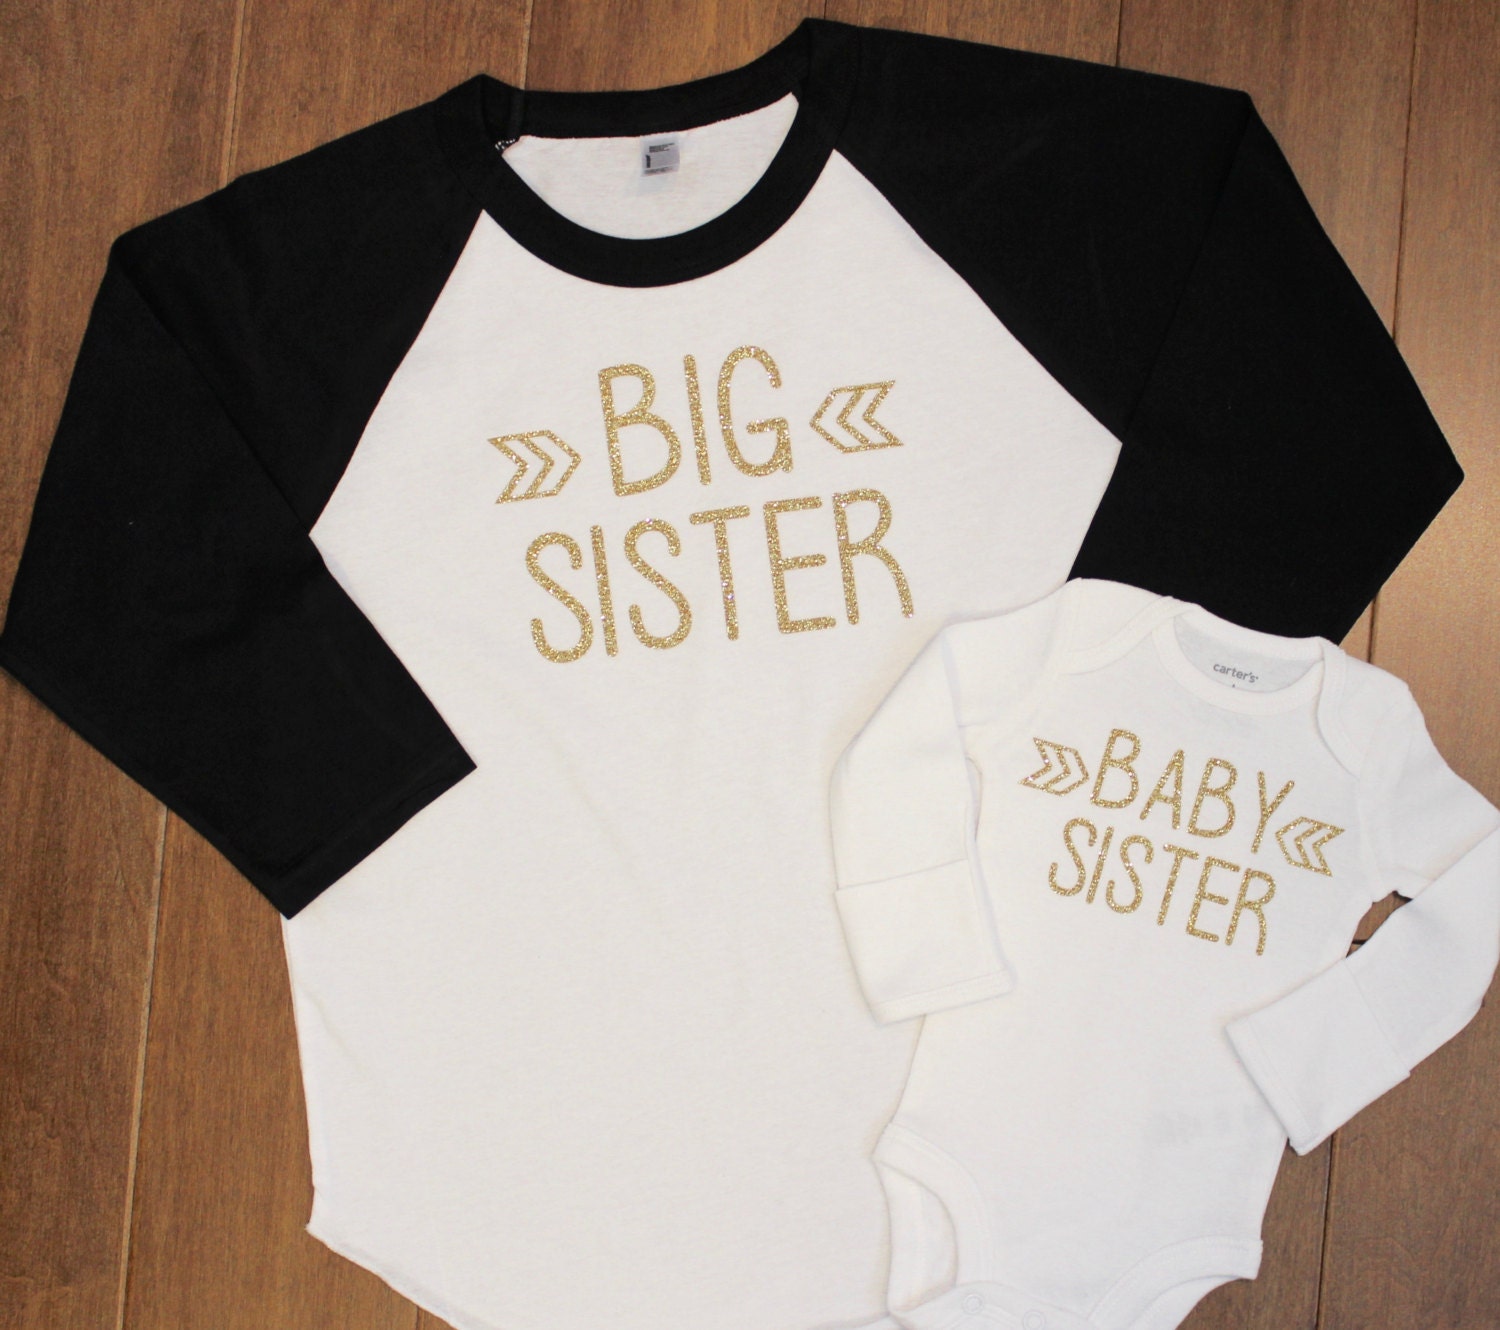 Big Sister Shirts Carters Canada Agbu Hye Geen - roblox necklace t shirt free agbu hye geen